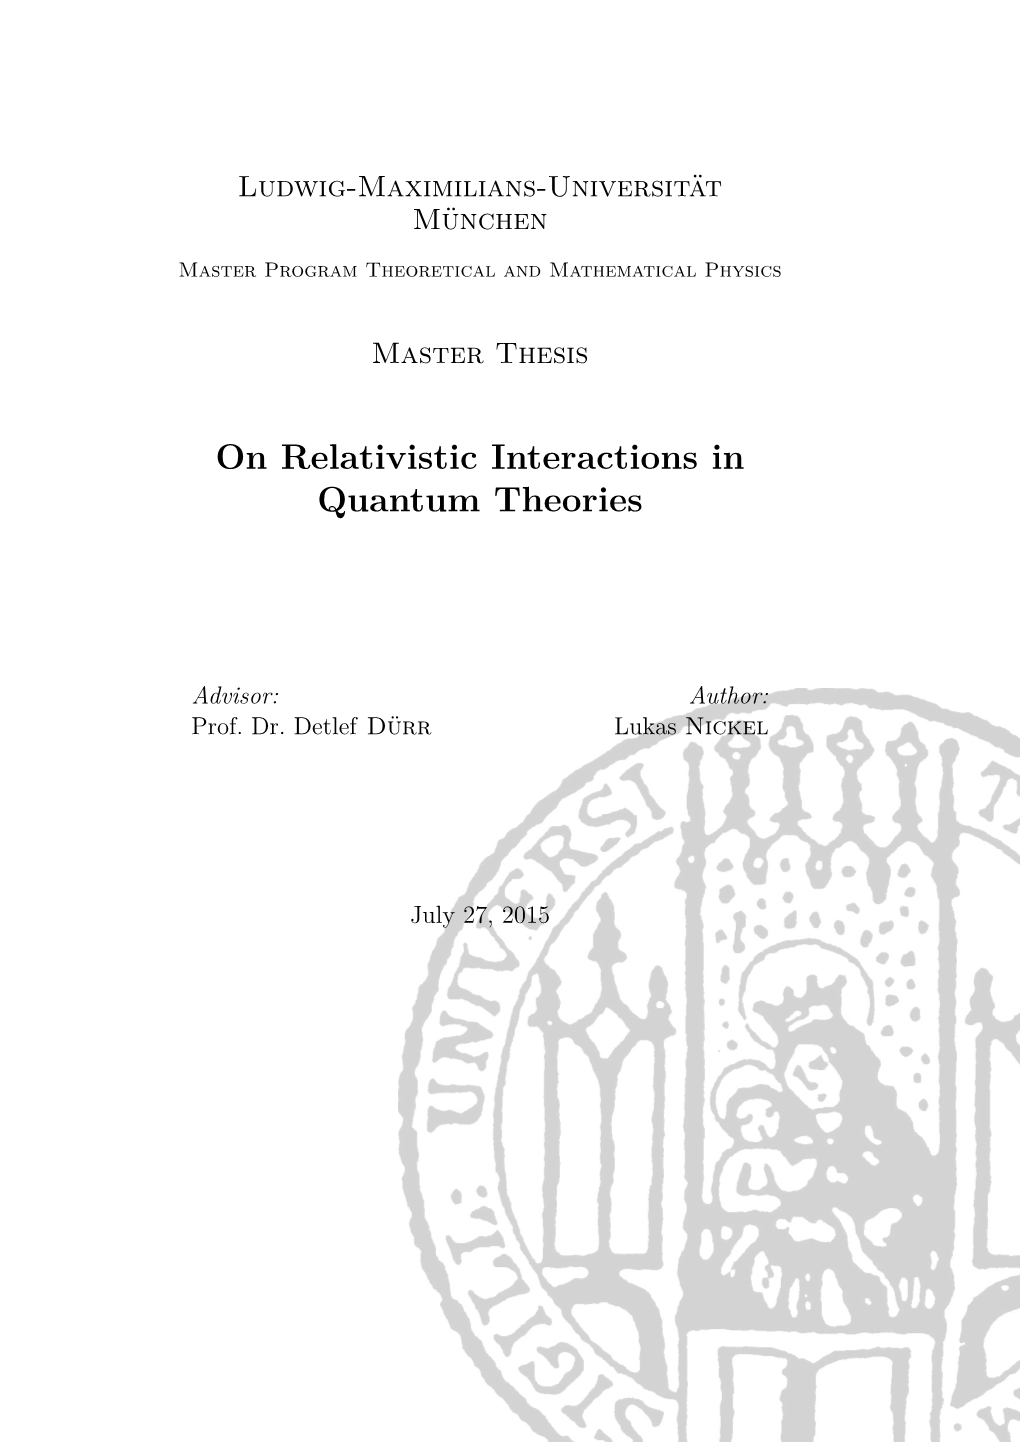 On Relativistic Interactions in Quantum Theories